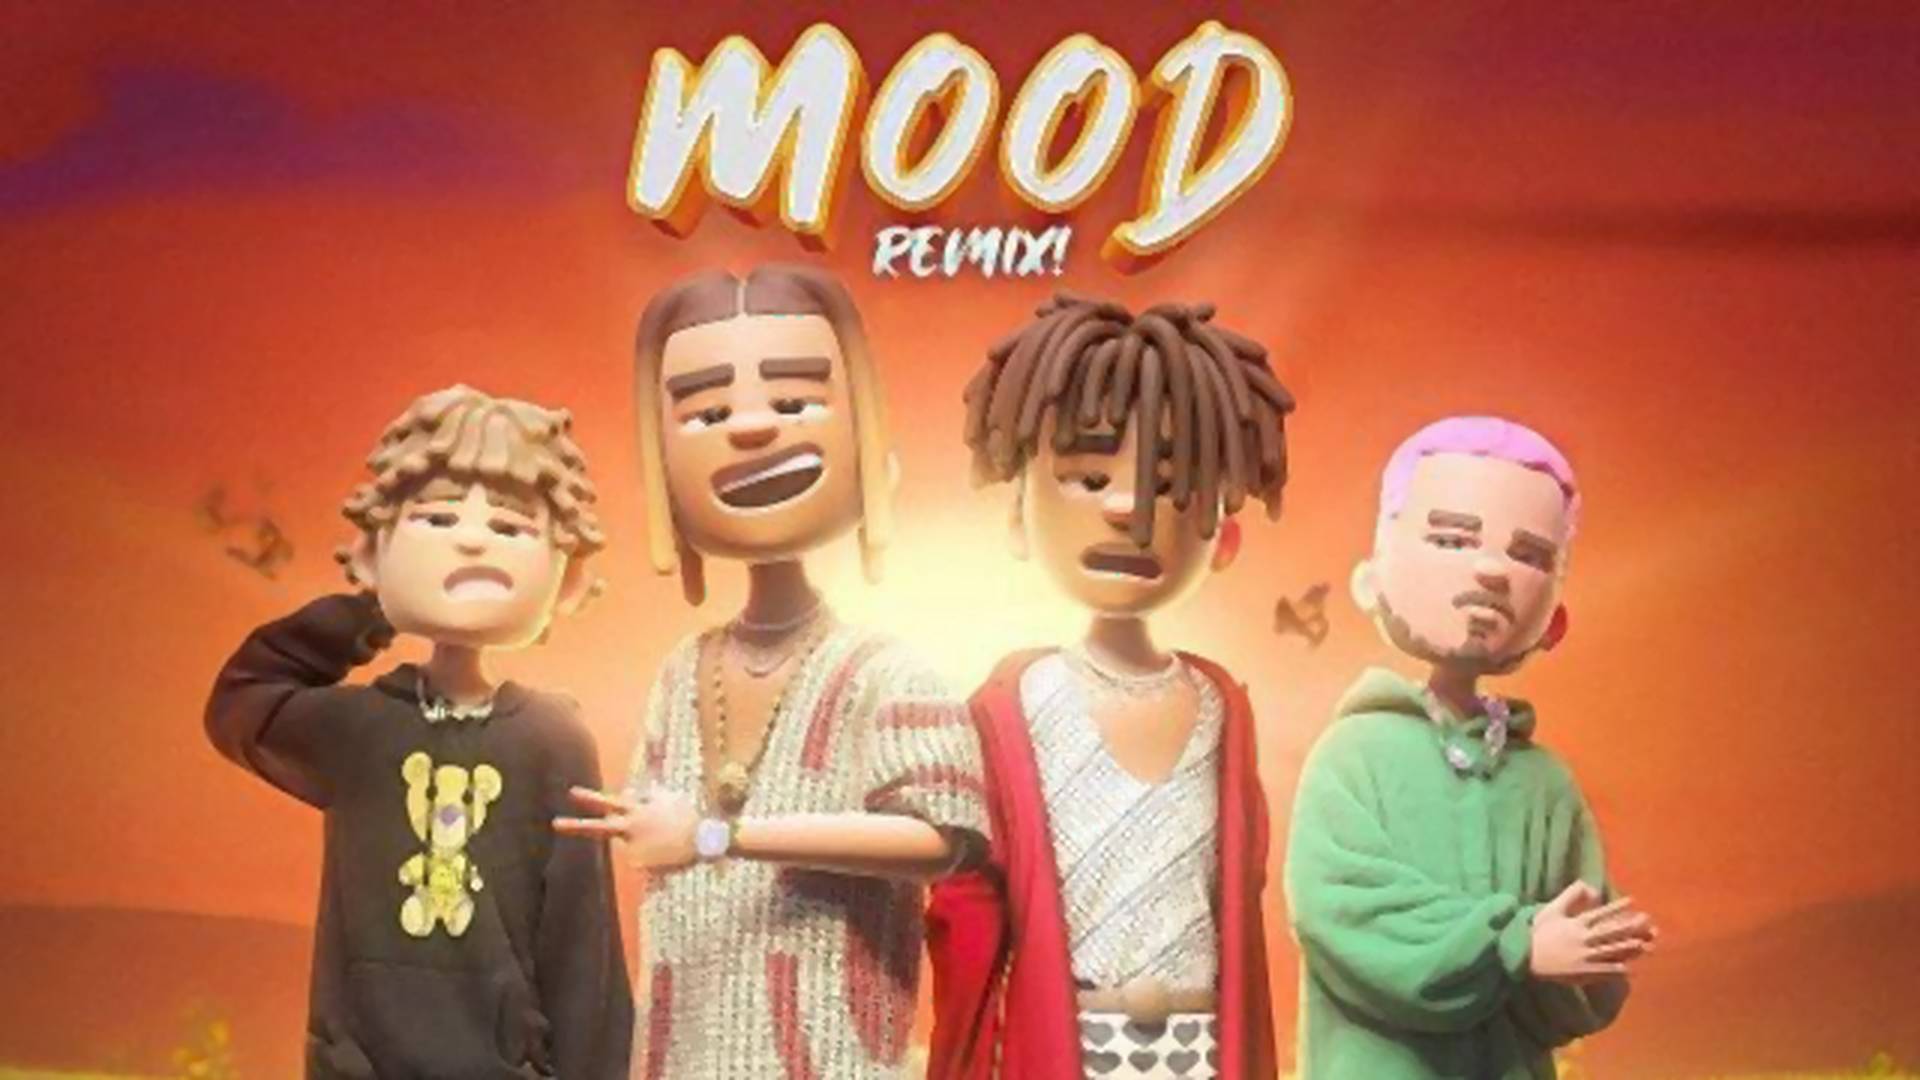 Justin Bieber és J Balvin vendégszereplésével megérkezett a "Mood" című világsláger remixe